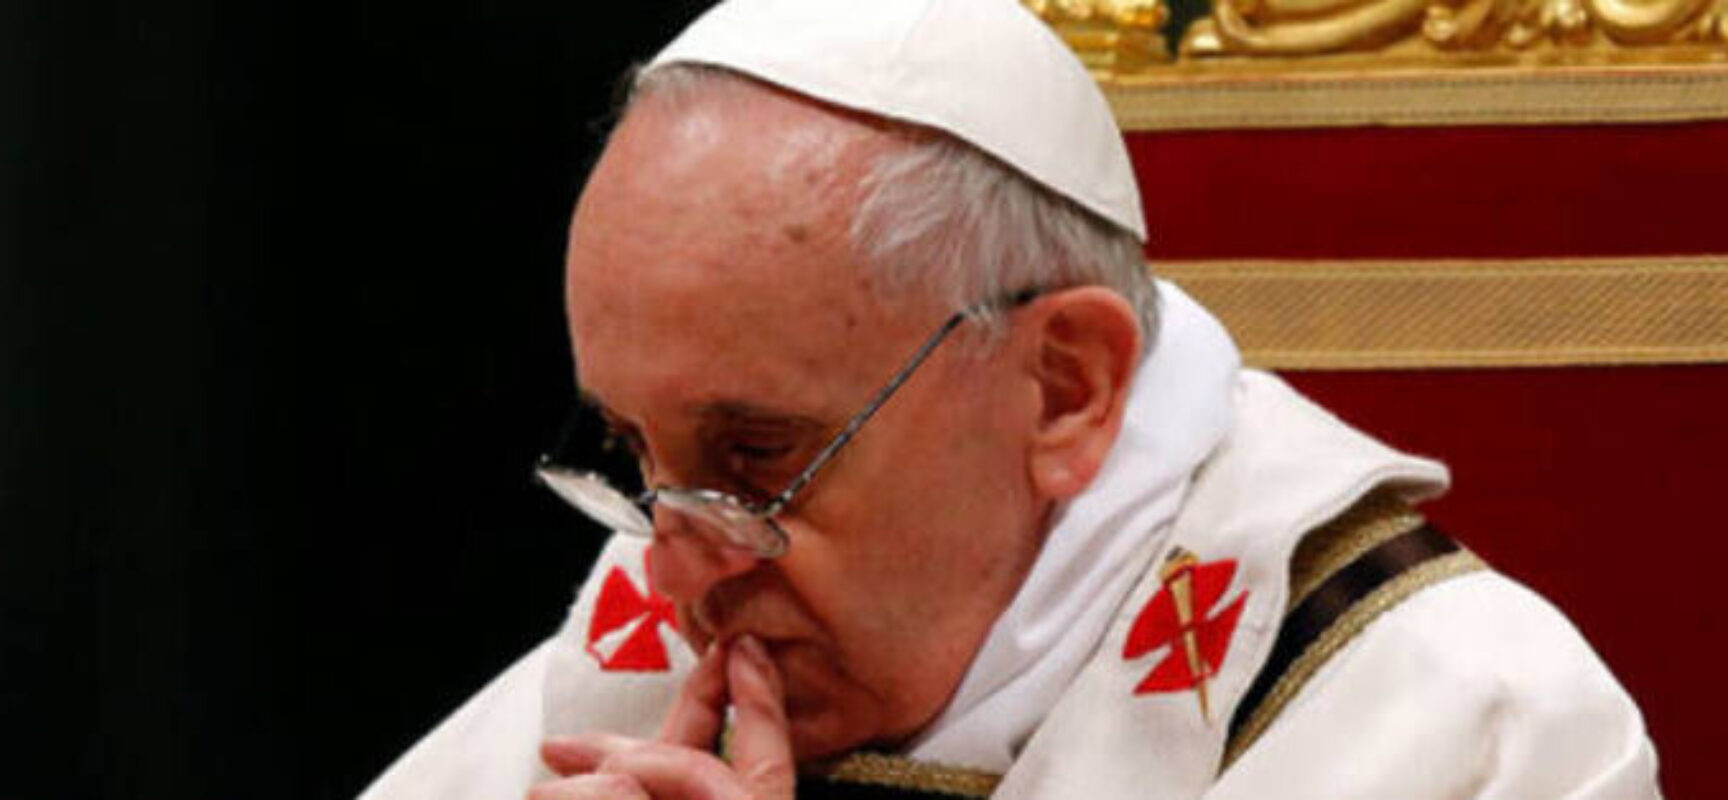 Papa informa que Bento XVI está “gravemente doente” e pede orações